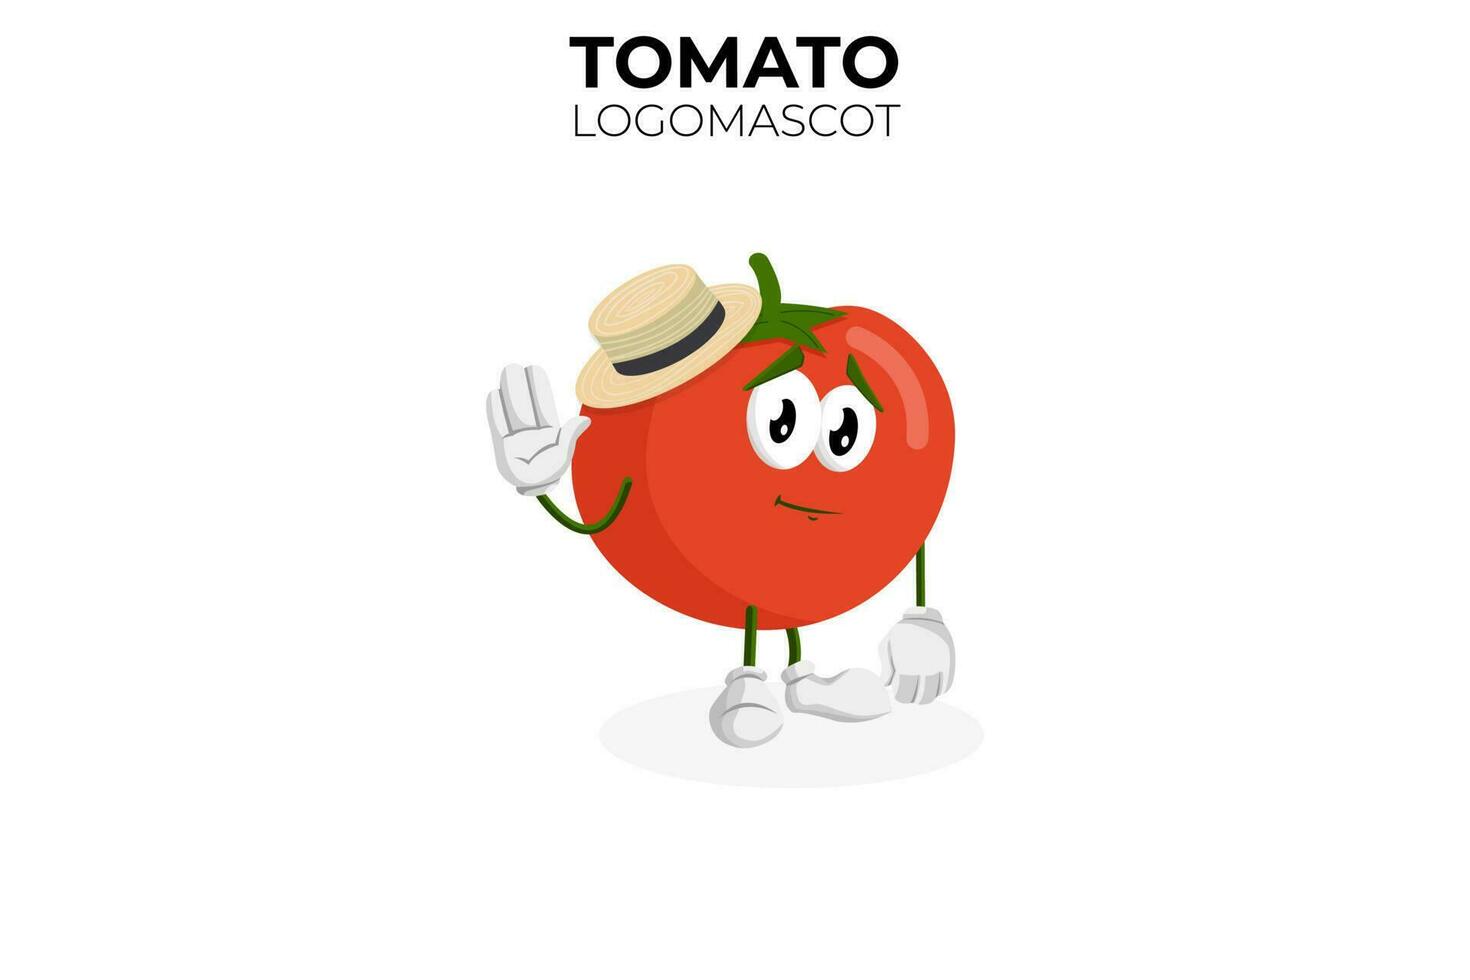 mascotte di pomodoro dei cartoni animati, illustrazione vettoriale di una mascotte di un simpatico personaggio di pomodoro